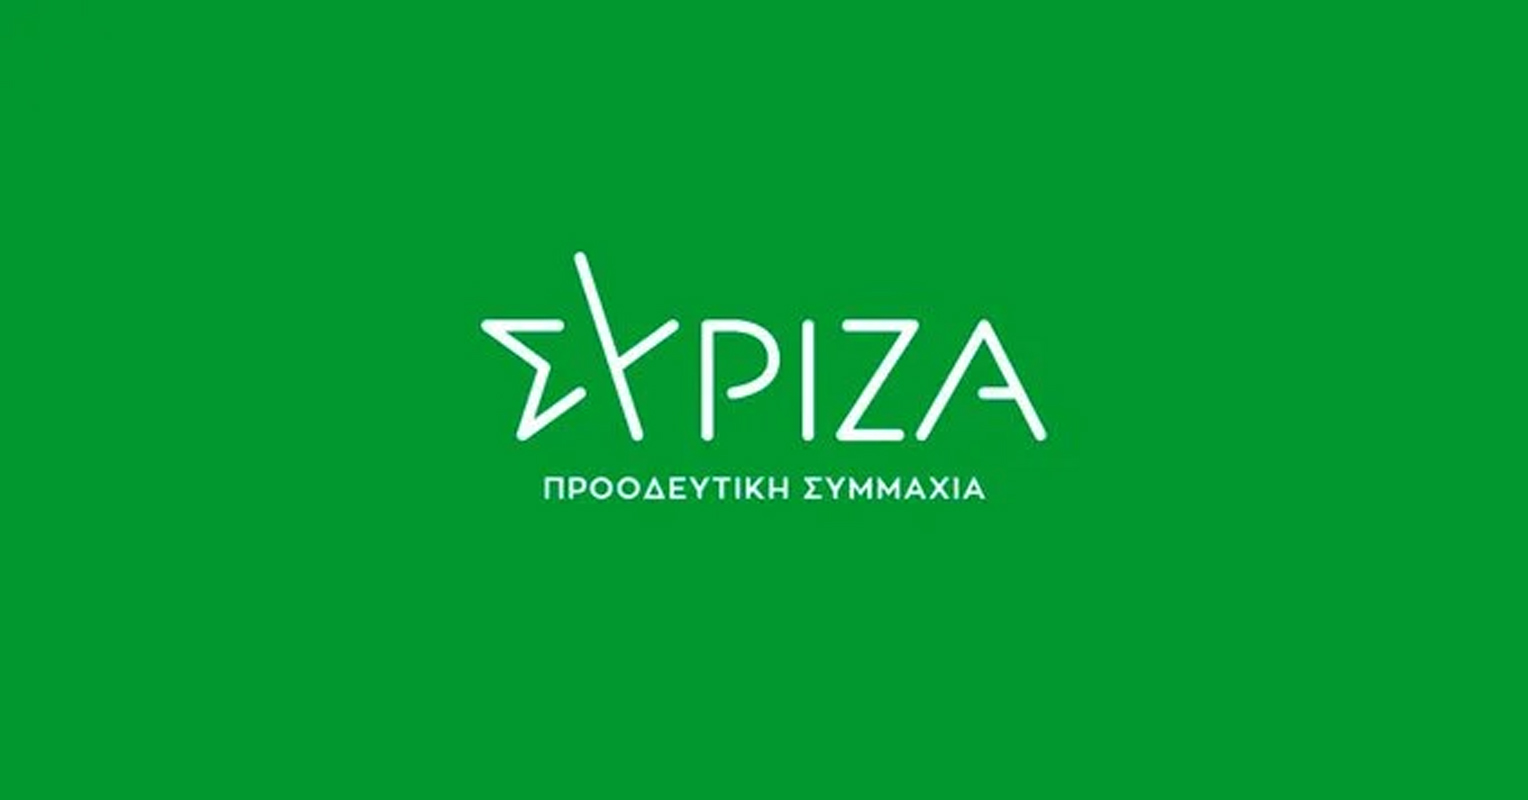 Ν. Ηλιόπουλος: «Η κυβέρνηση Μητσοτάκη έχει κάνει το τρολάρισμα επιστήμη»